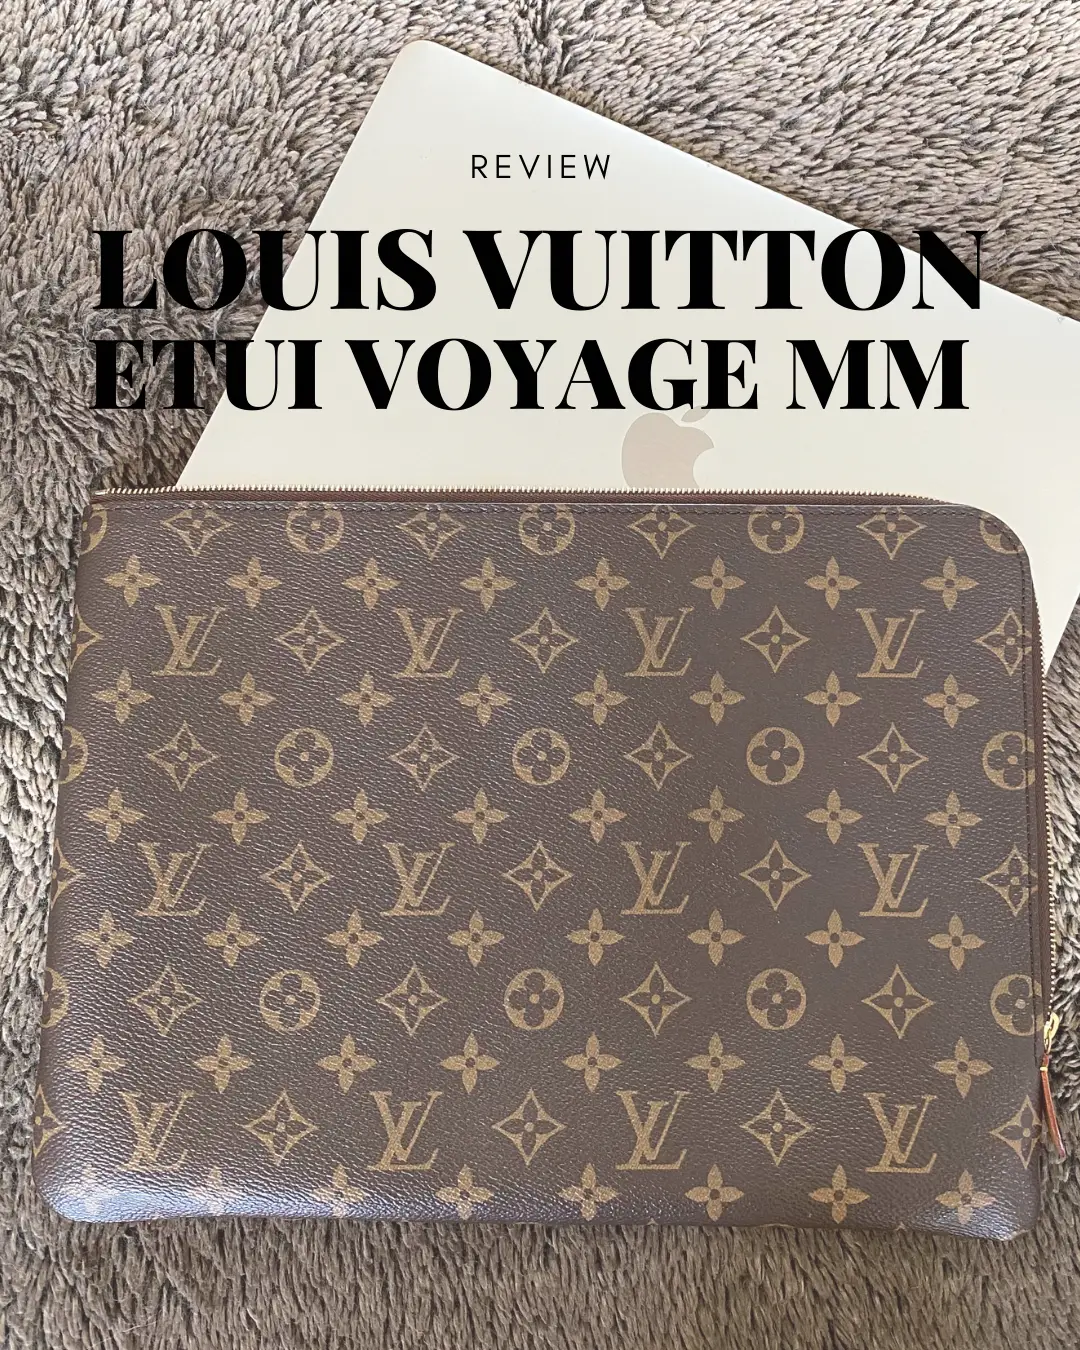 BEST LV LAPTOP BAGS* Louis Vuitton purses that fit a 15 MacBook Pro